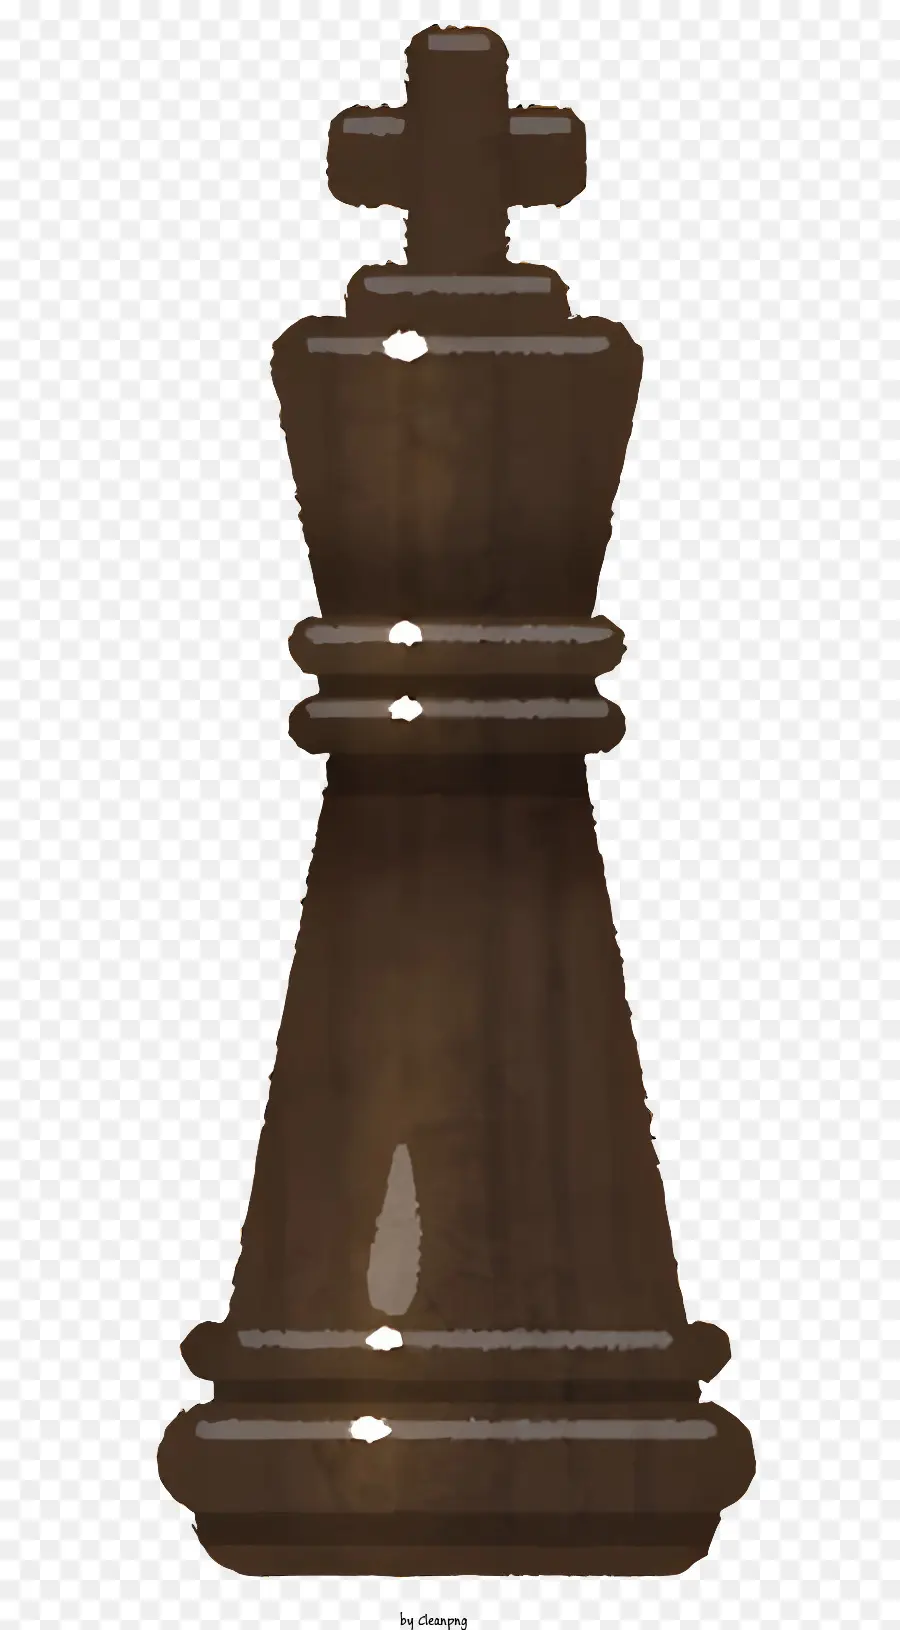 Impronta - Pezzo di scacchi del re di legno con testa dorata, corna e gambe a forma di X su sfondo nero